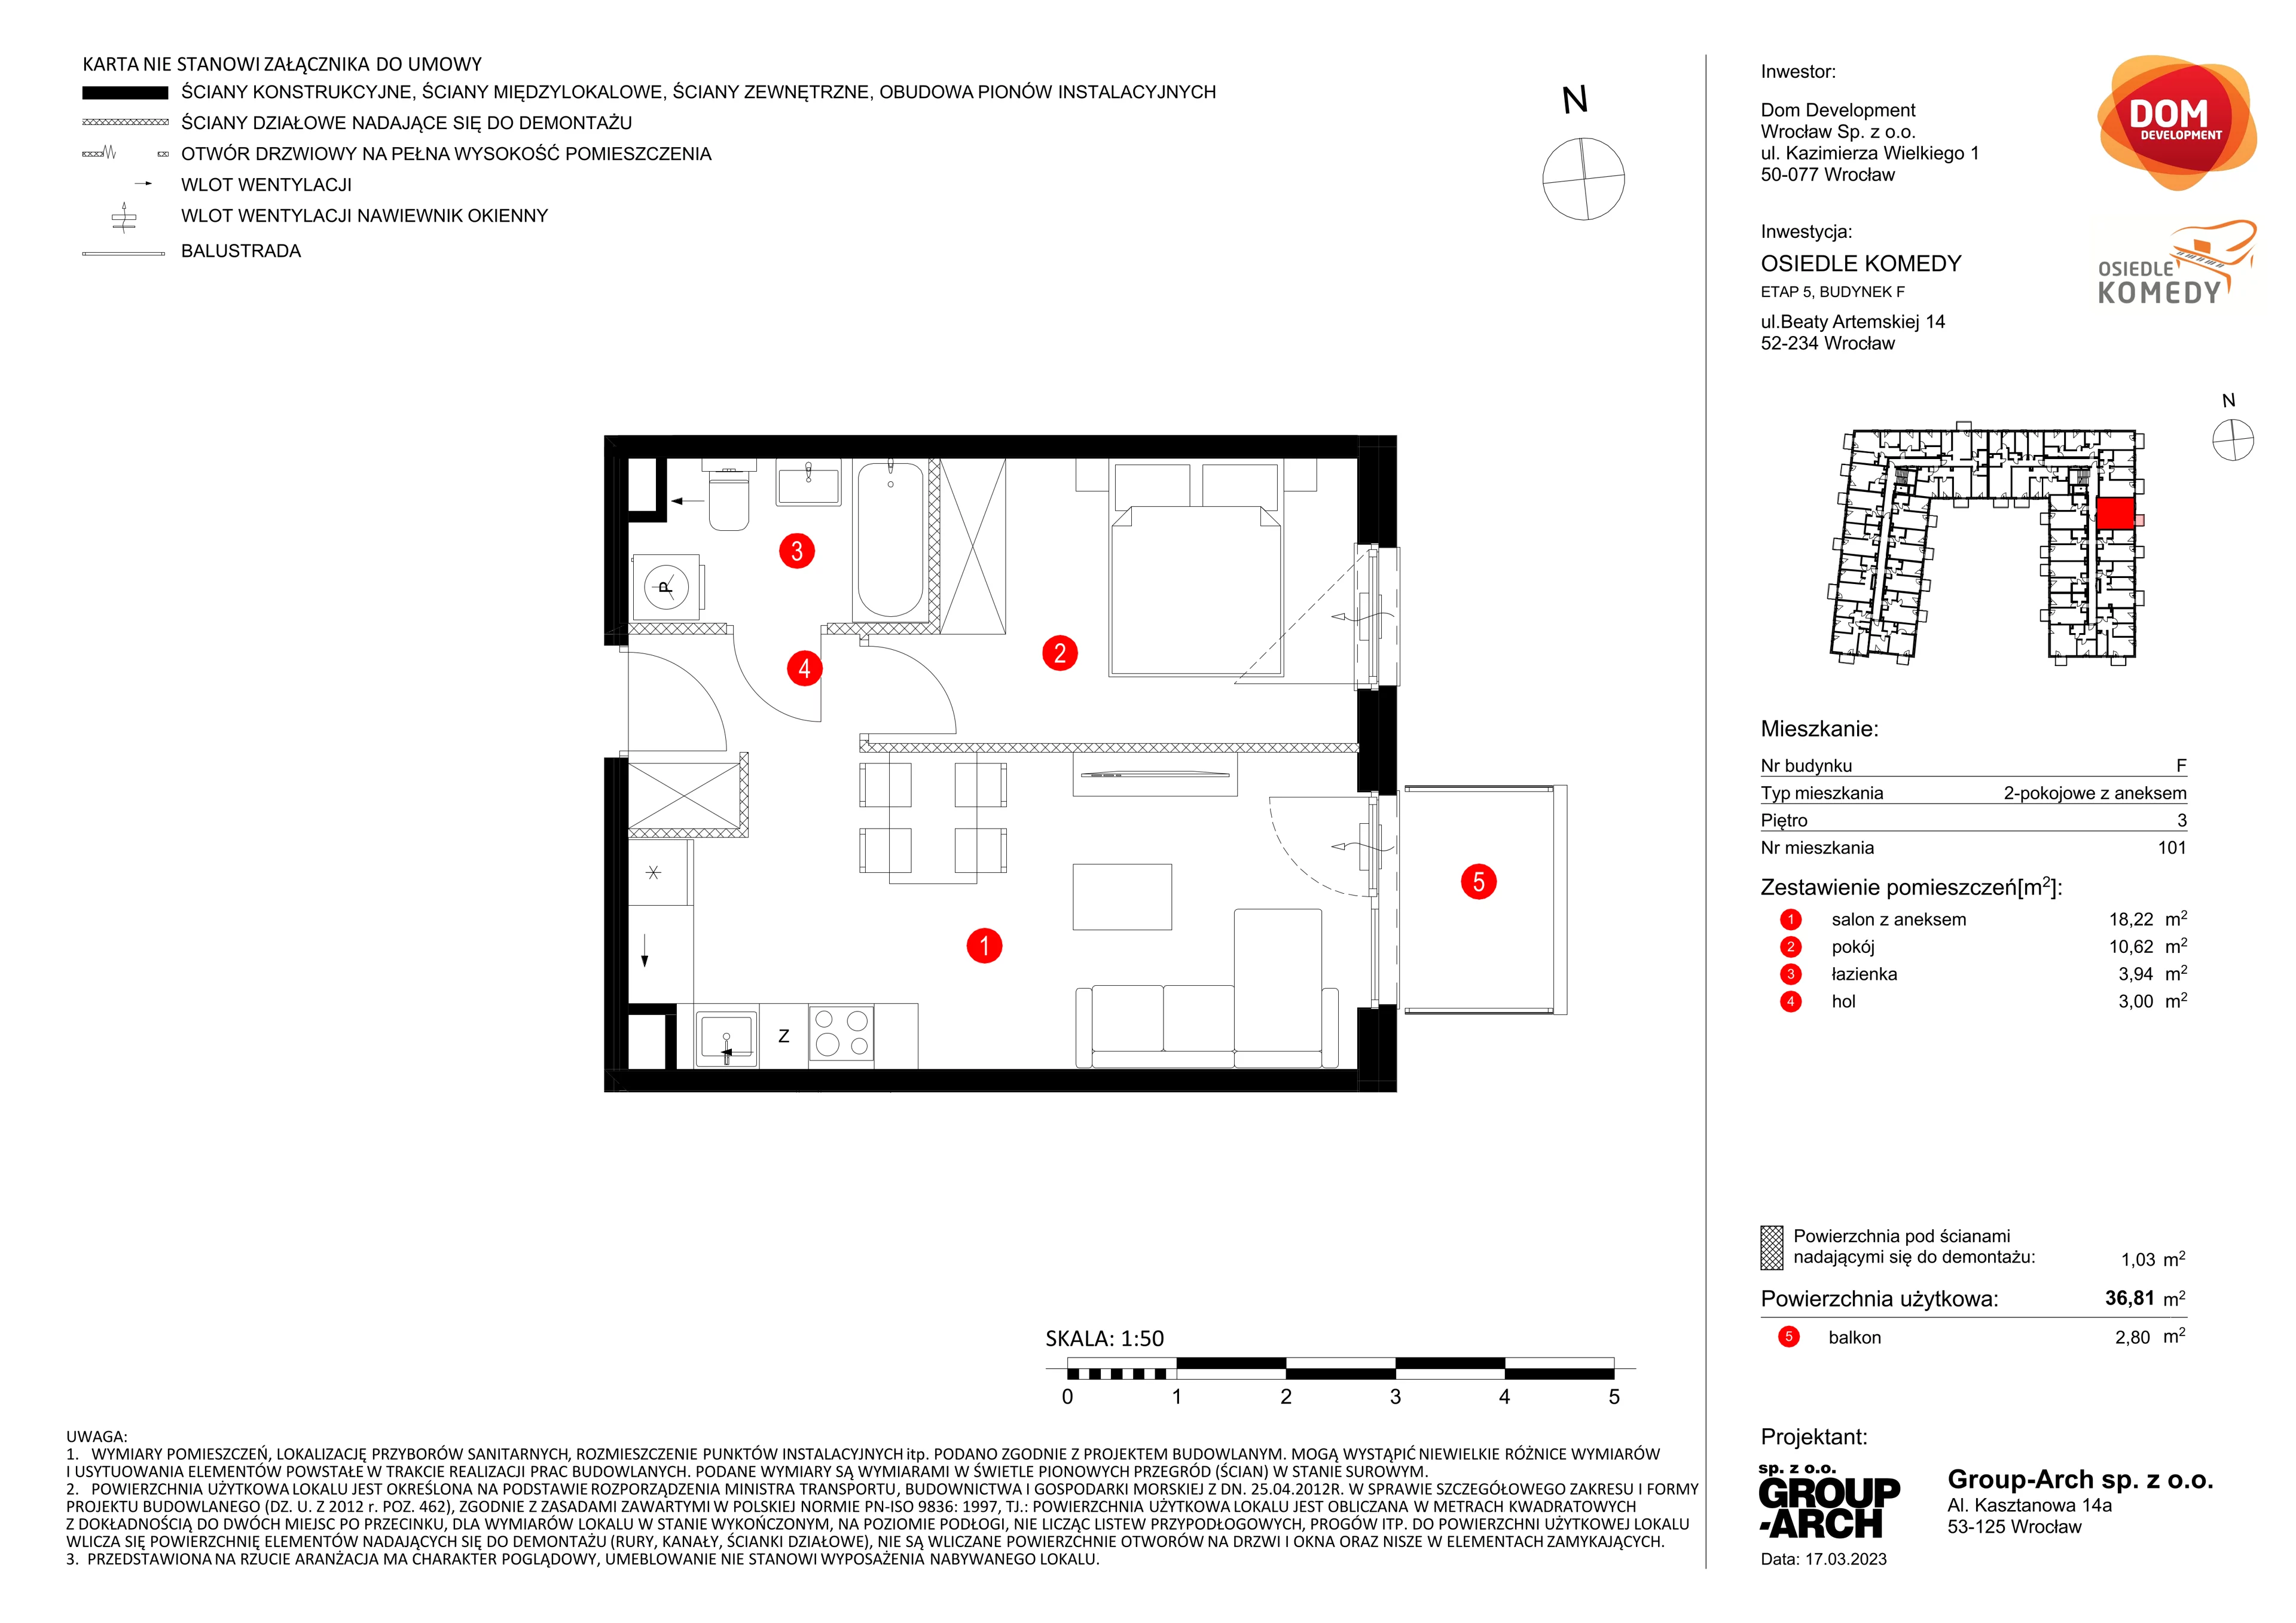 Mieszkanie 36,81 m², piętro 3, oferta nr F/101, Osiedle Komedy, Wrocław, Jagodno, Krzyki, ul. Komedy 1B